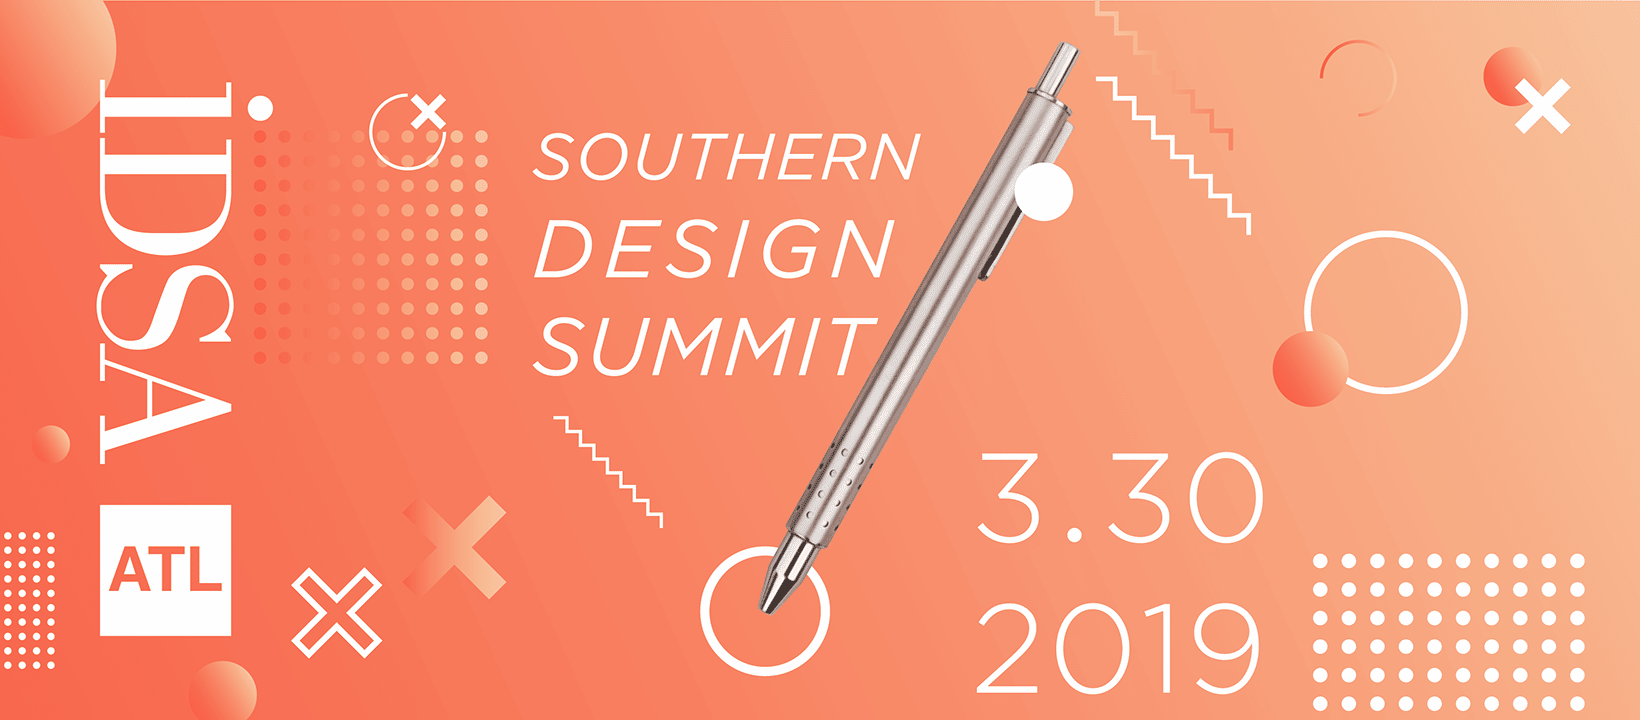 Design-Summit-Poster_v2up-03.png